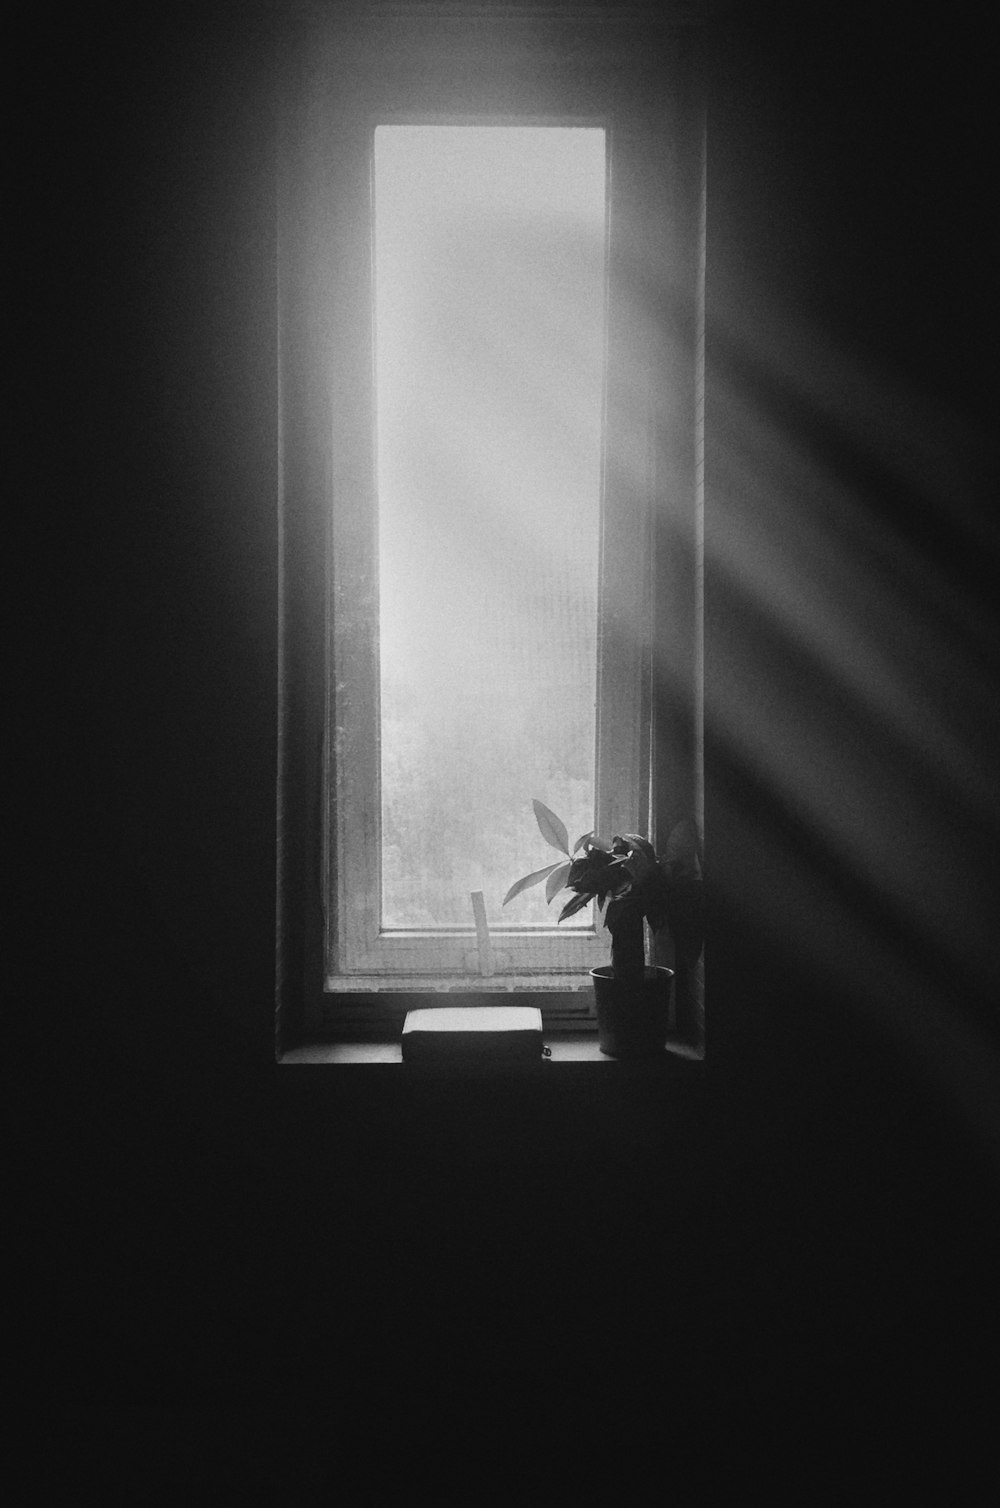 Photographie en niveaux de gris d’une plante sur une fenêtre